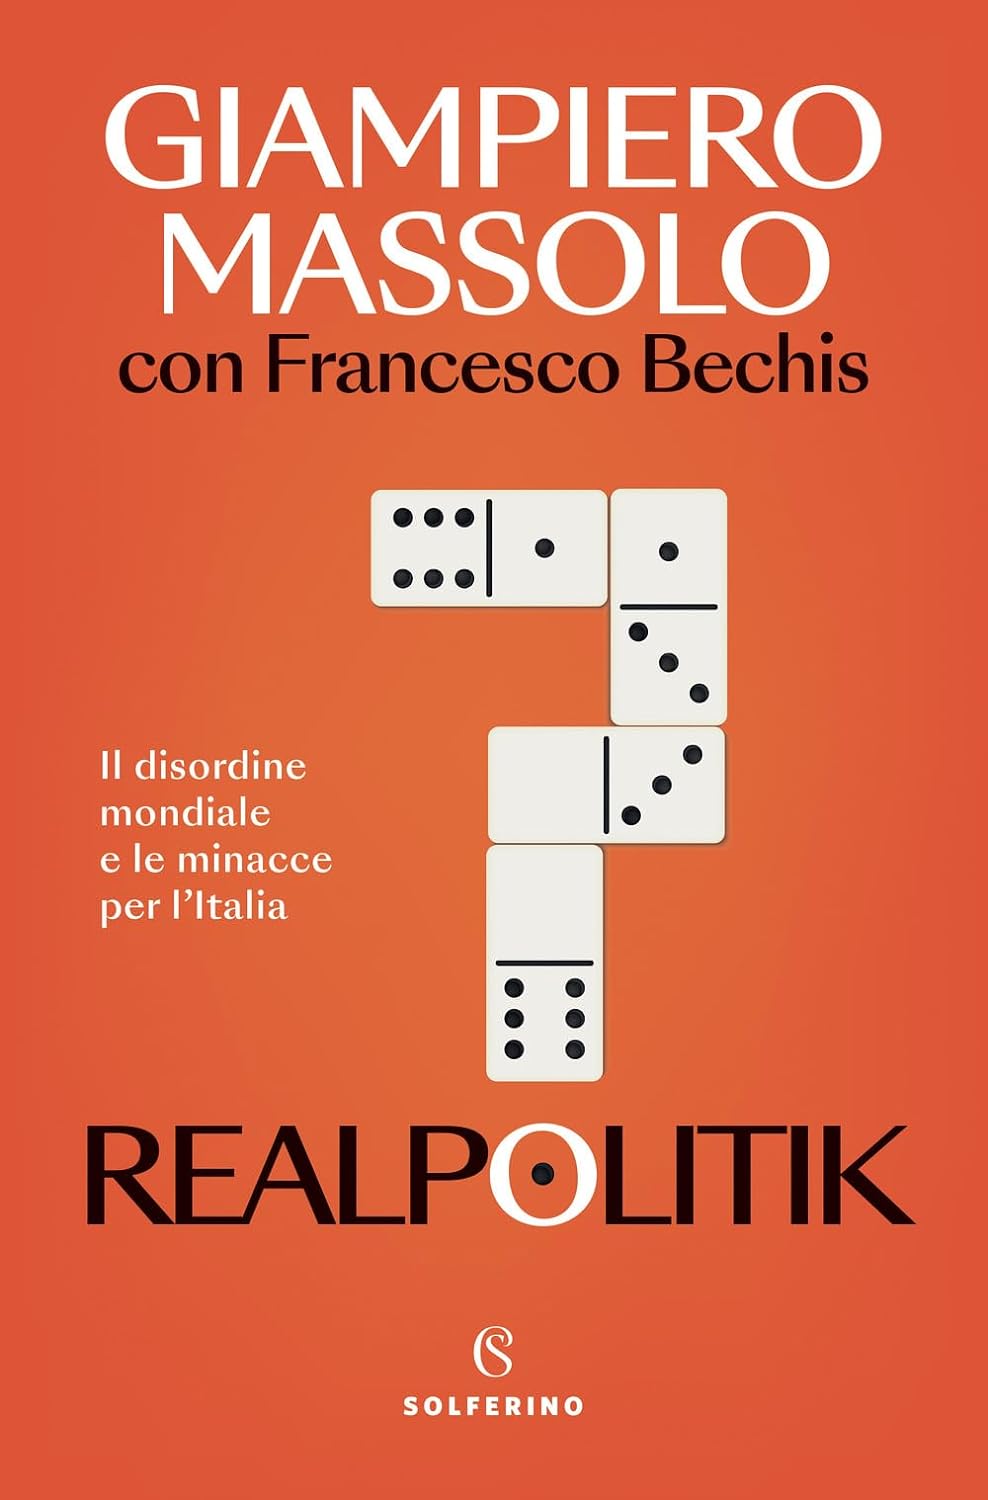 “Realpolitik. Il disordine mondiale e le minacce per l'Italia”. Il libro dell’Ambasciatore Massolo e del giornalista Bechis